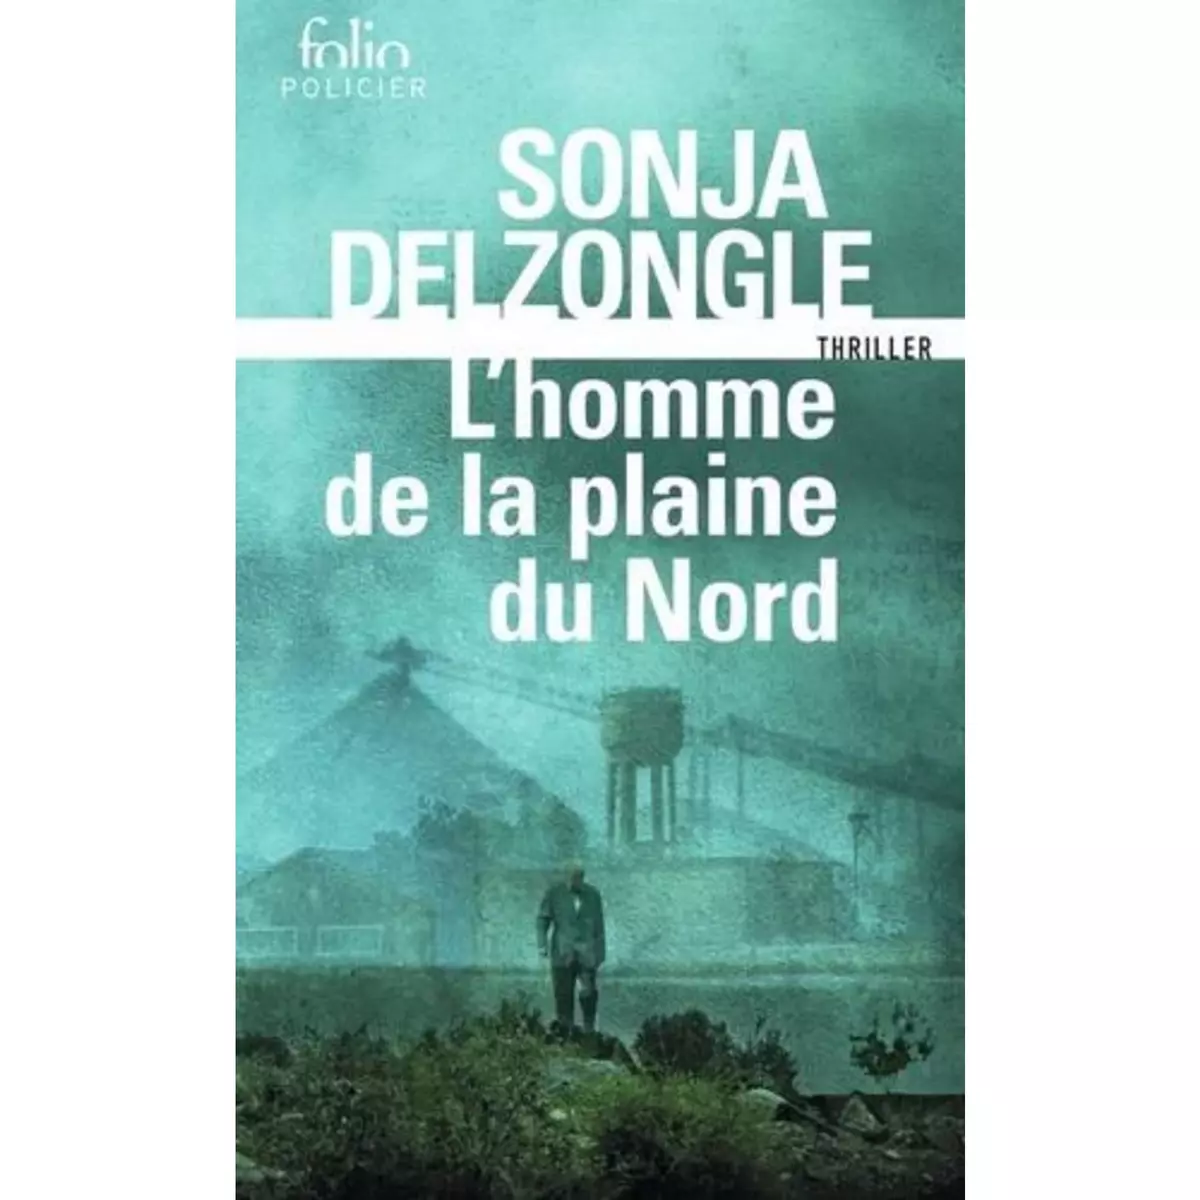  L'HOMME DE LA PLAINE DU NORD, Delzongle Sonja